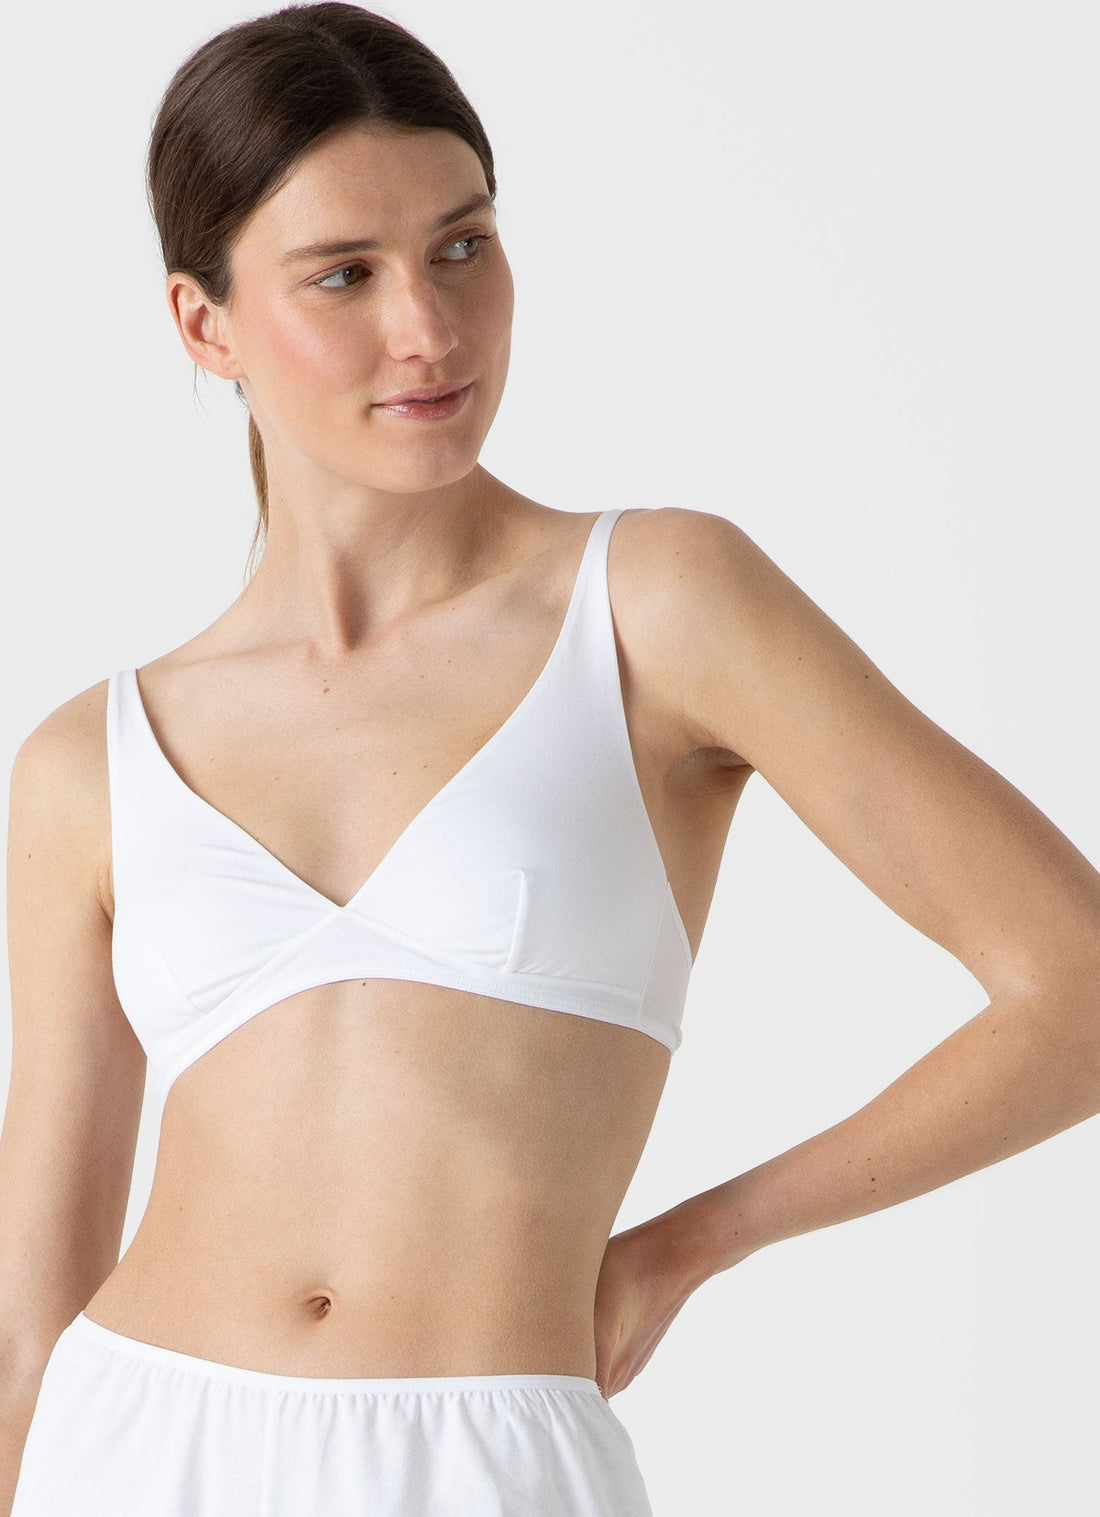 Women underwear : Women top Cotton Stretch white